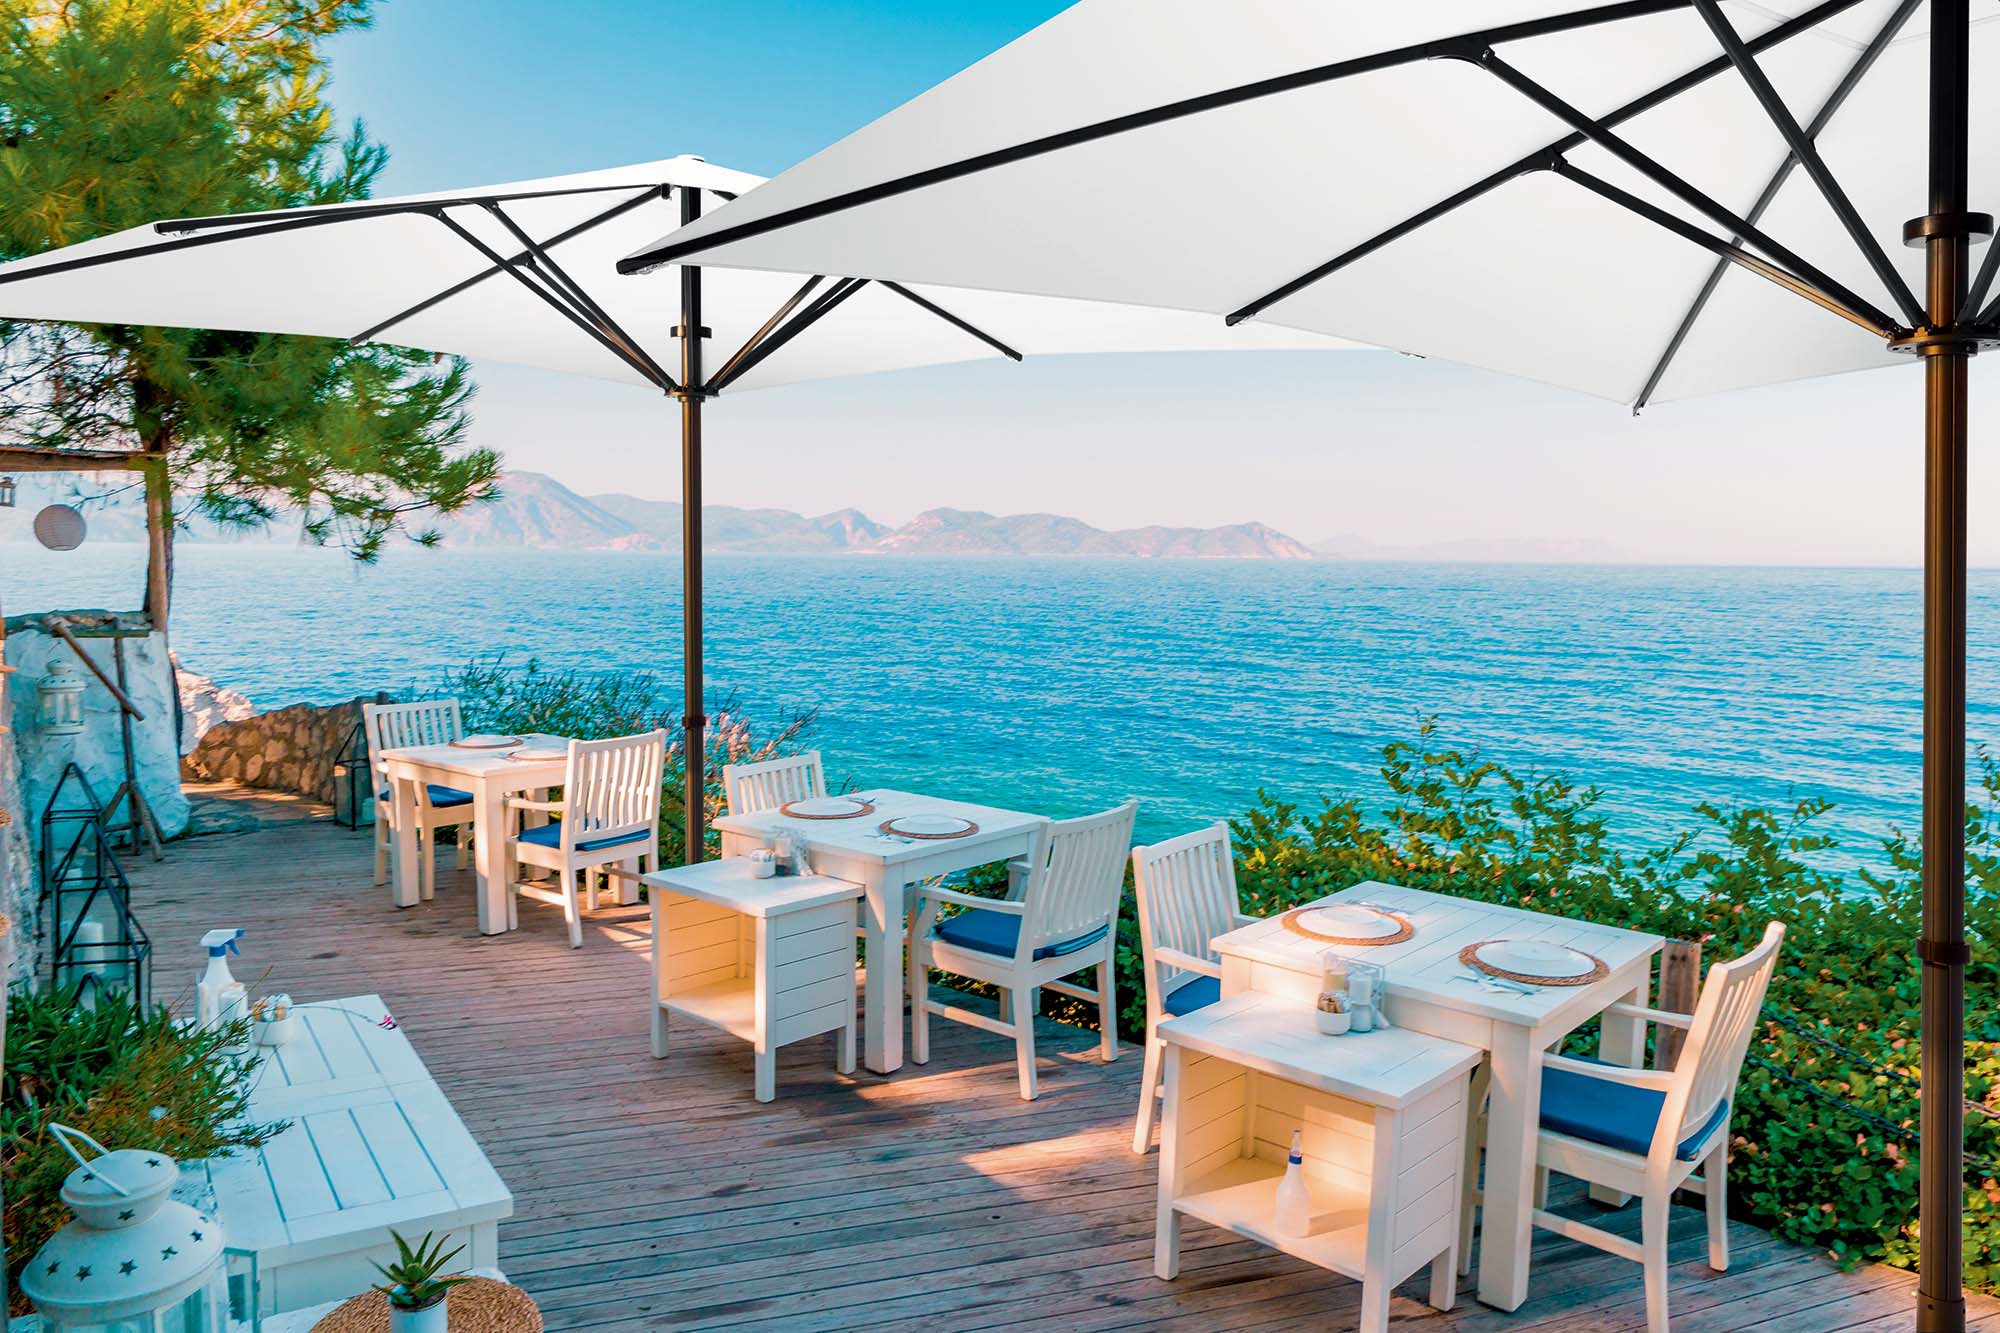 Baham Pure Sonnenschirm auf einer Terrasse eines Restaurants, mit Blick aufs Meer.